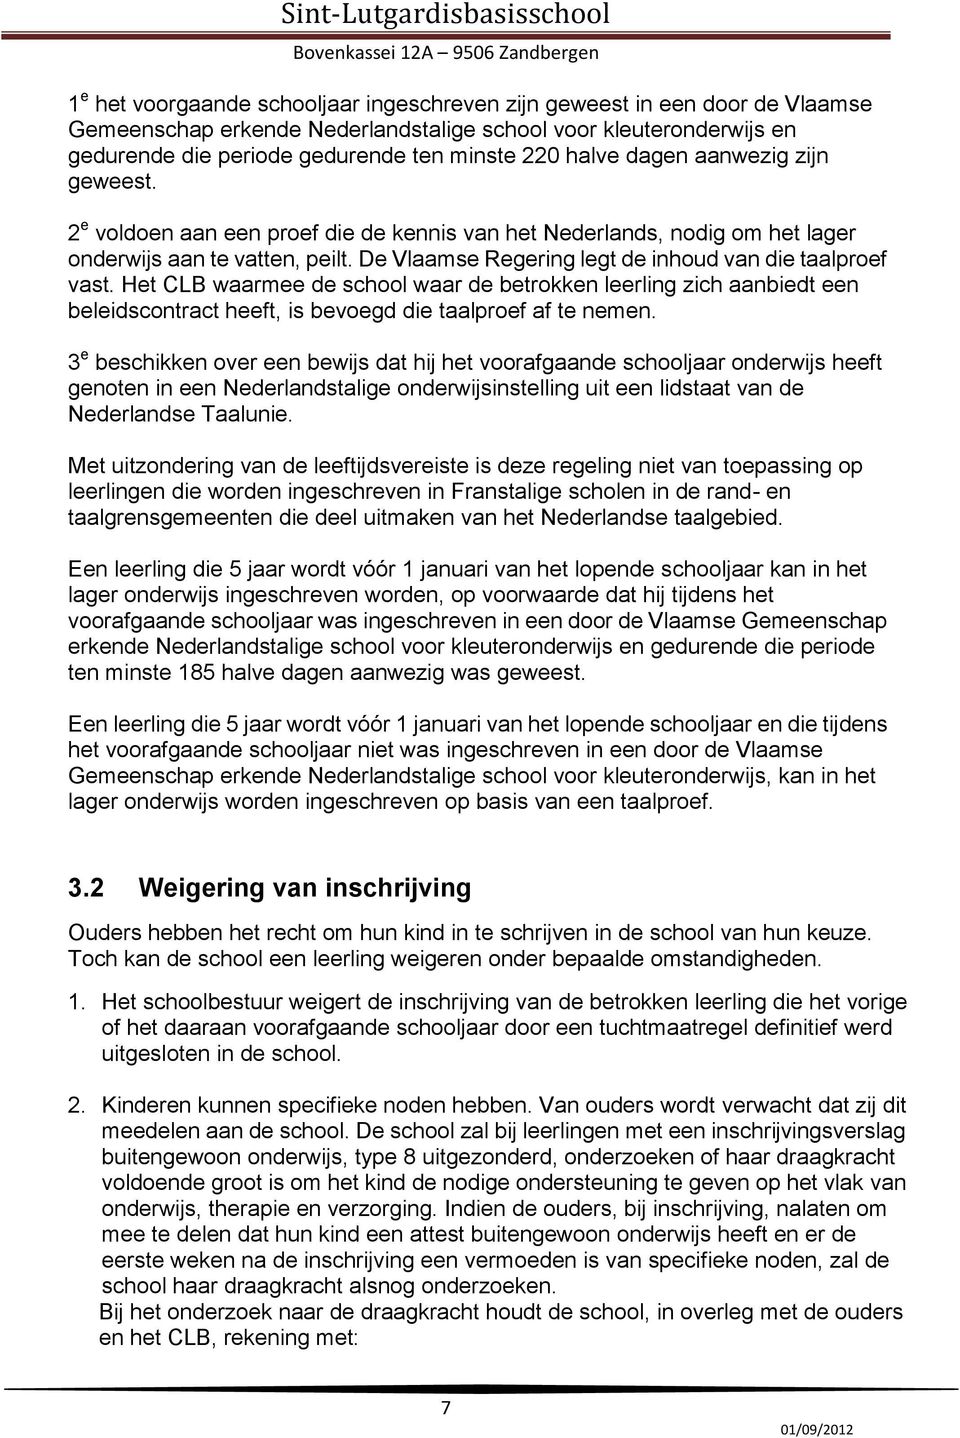 De Vlaamse Regering legt de inhoud van die taalproef vast. Het CLB waarmee de school waar de betrokken leerling zich aanbiedt een beleidscontract heeft, is bevoegd die taalproef af te nemen.